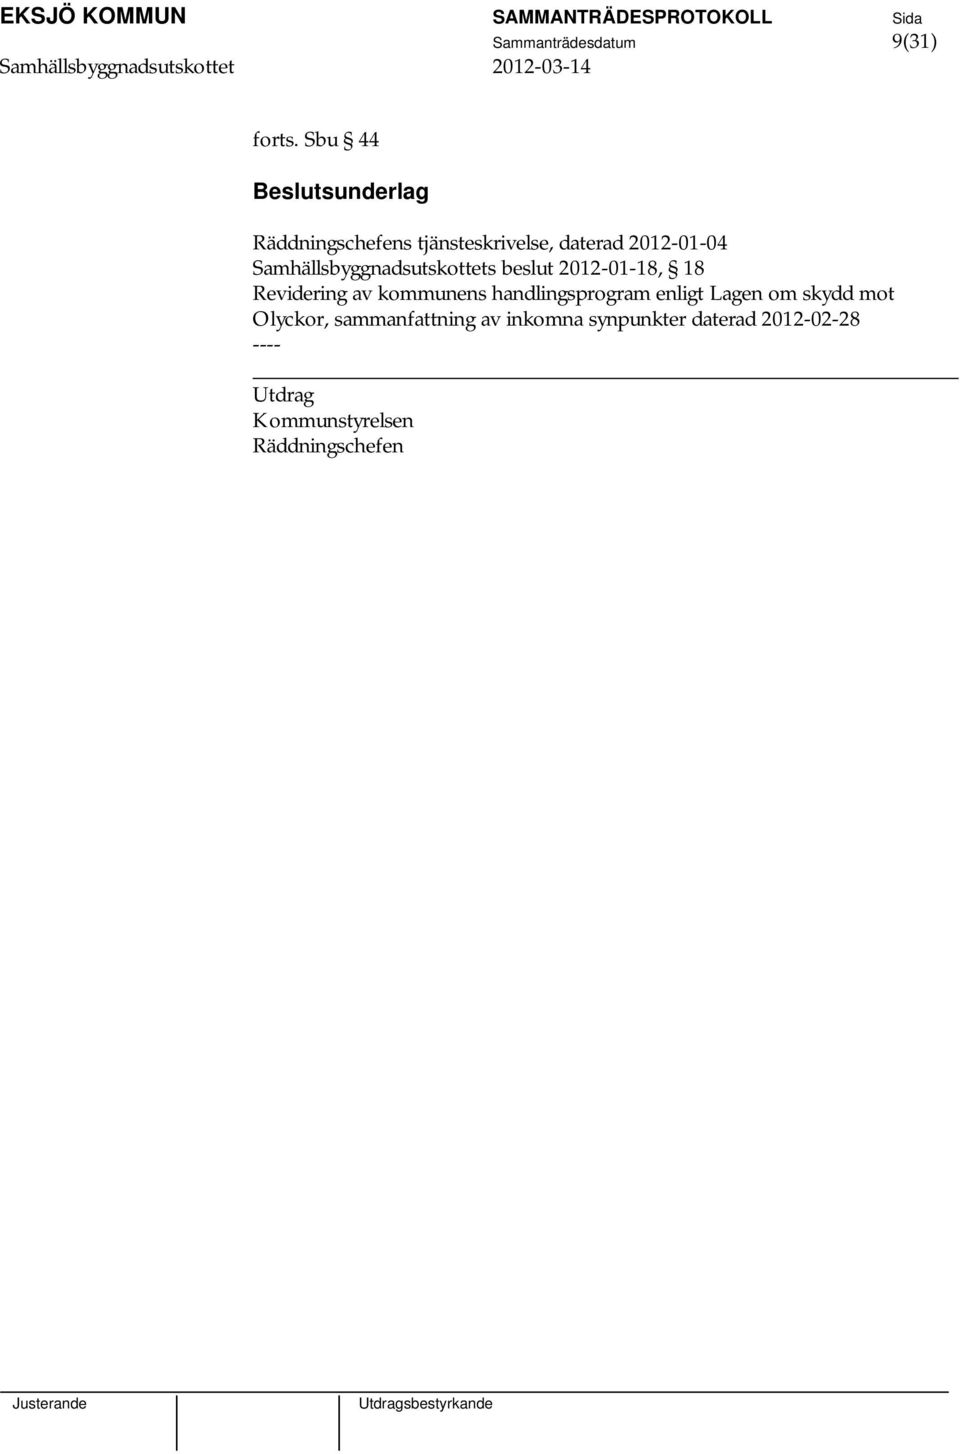 Samhällsbyggnadsutskottets beslut 2012-01-18, 18 Revidering av kommunens